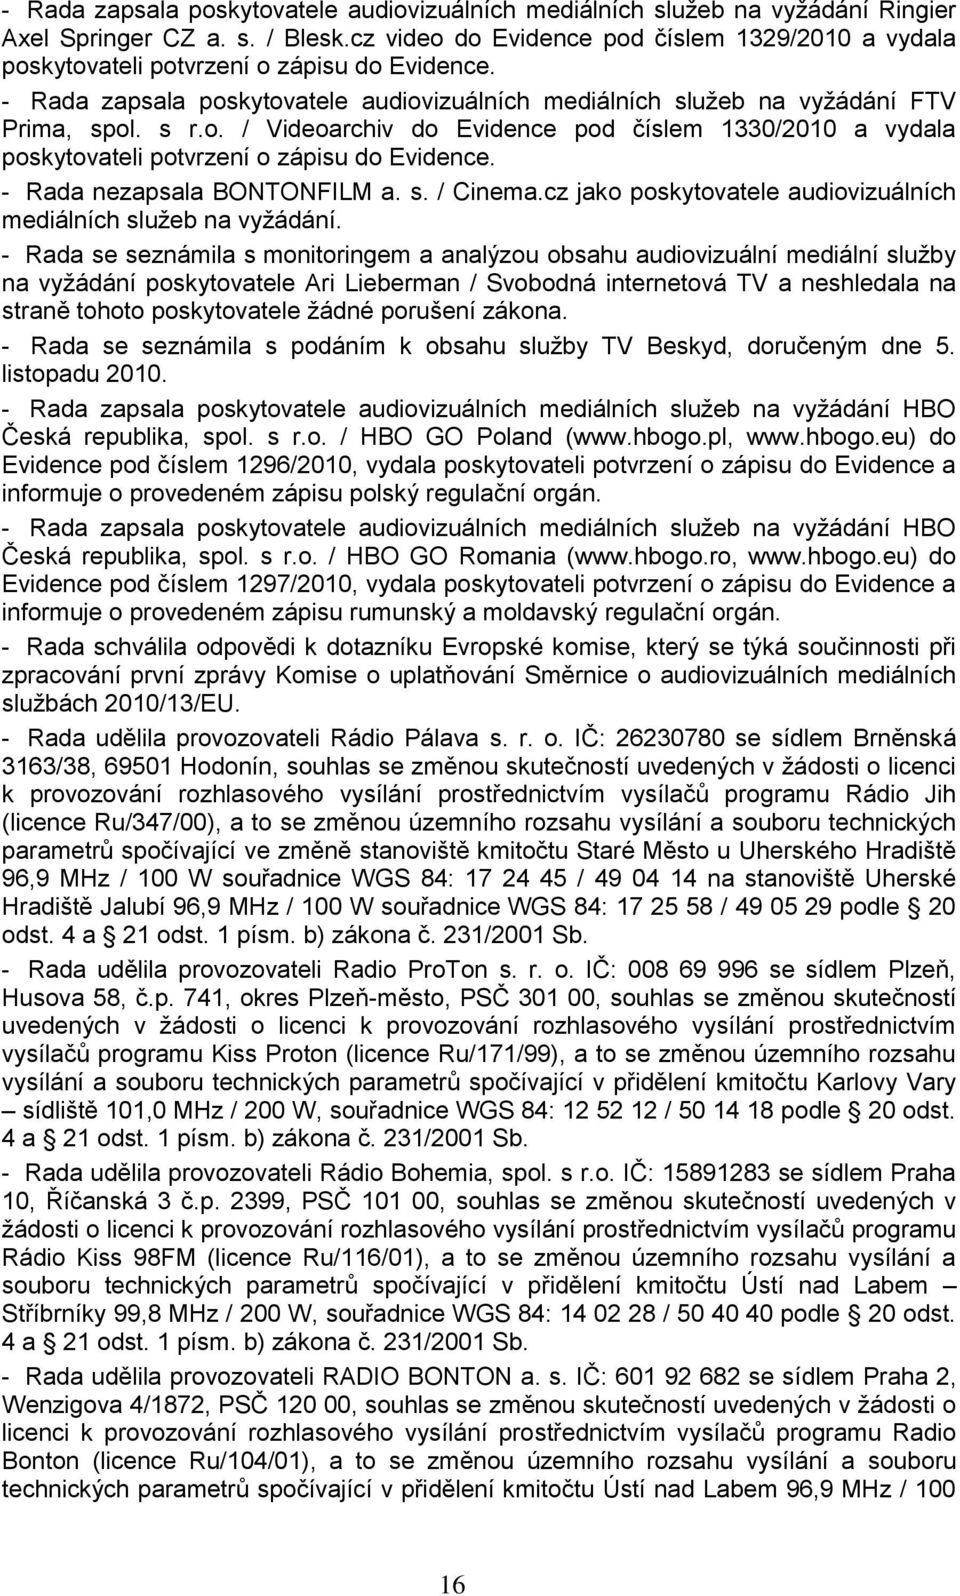 - Rada nezapsala BONTONFILM a. s. / Cinema.cz jako poskytovatele audiovizuálních mediálních služeb na vyžádání.